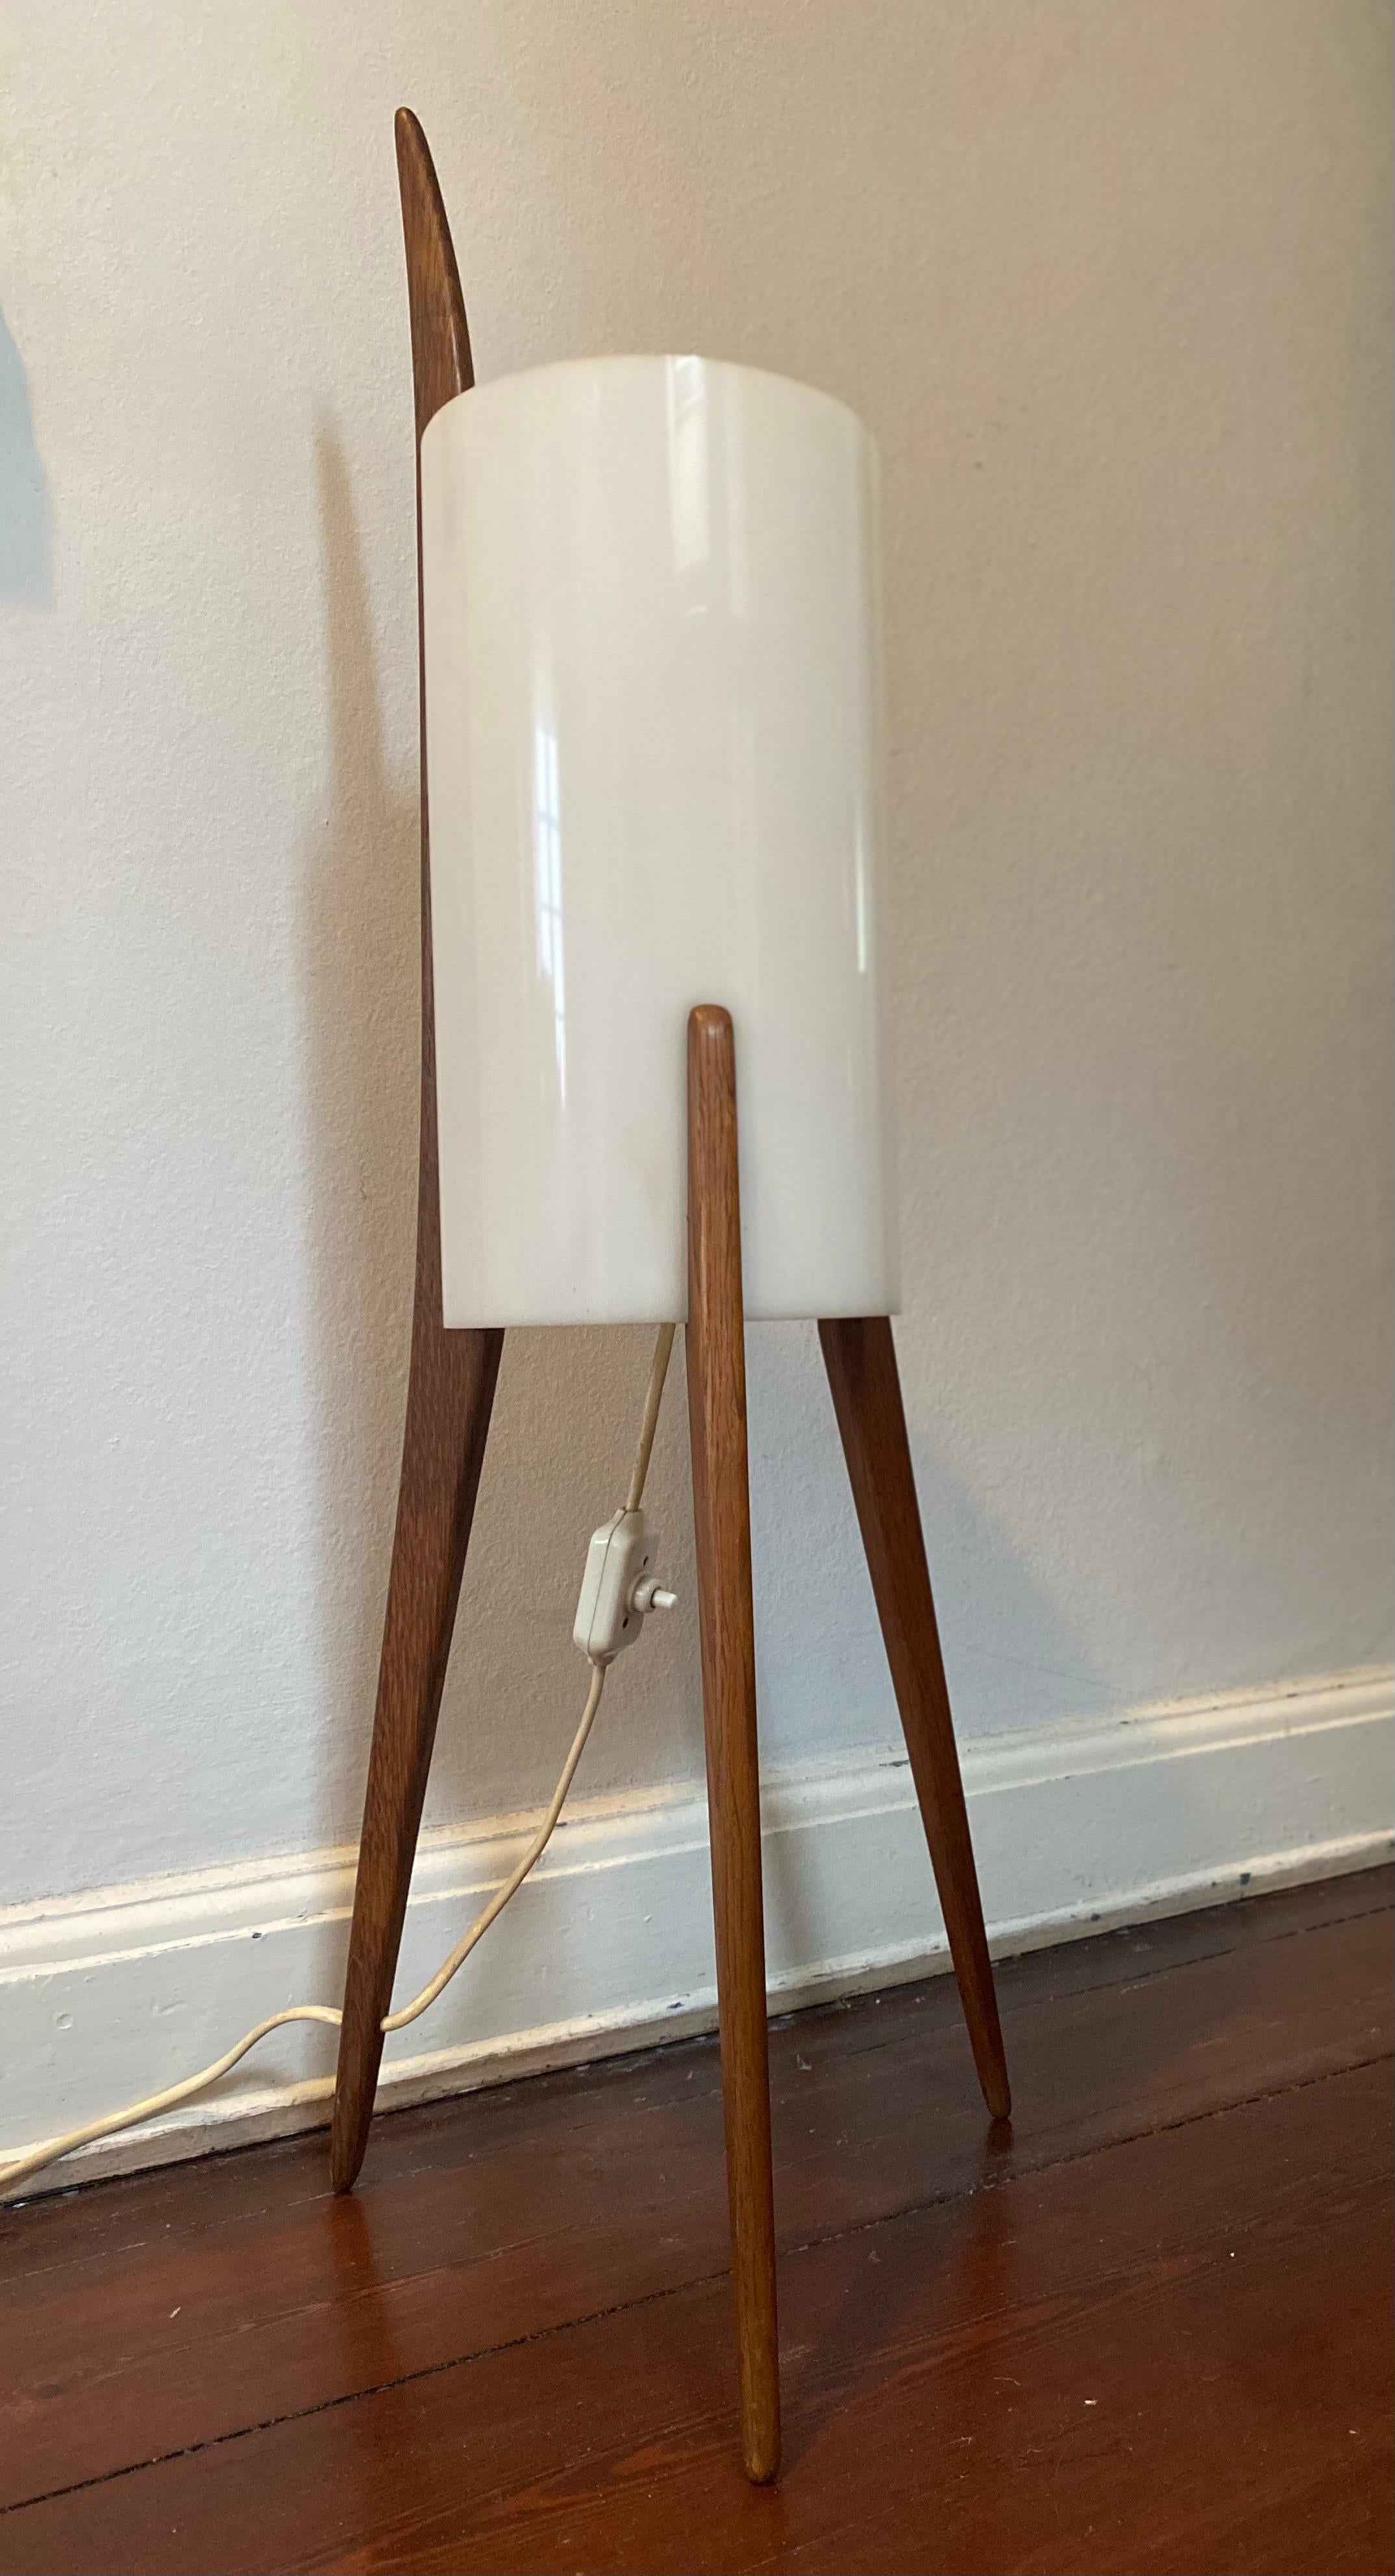 Diese seltene Stehleuchte (Modell Nr. 308) wurde von Uno & Östen Kristiansson für Luxus in den 1960er Jahren in Schweden entworfen. Der dreibeinige Ständer ist aus Eichenholz gefertigt und der zylinderförmige Schirm ist aus Plexiglas, was ein